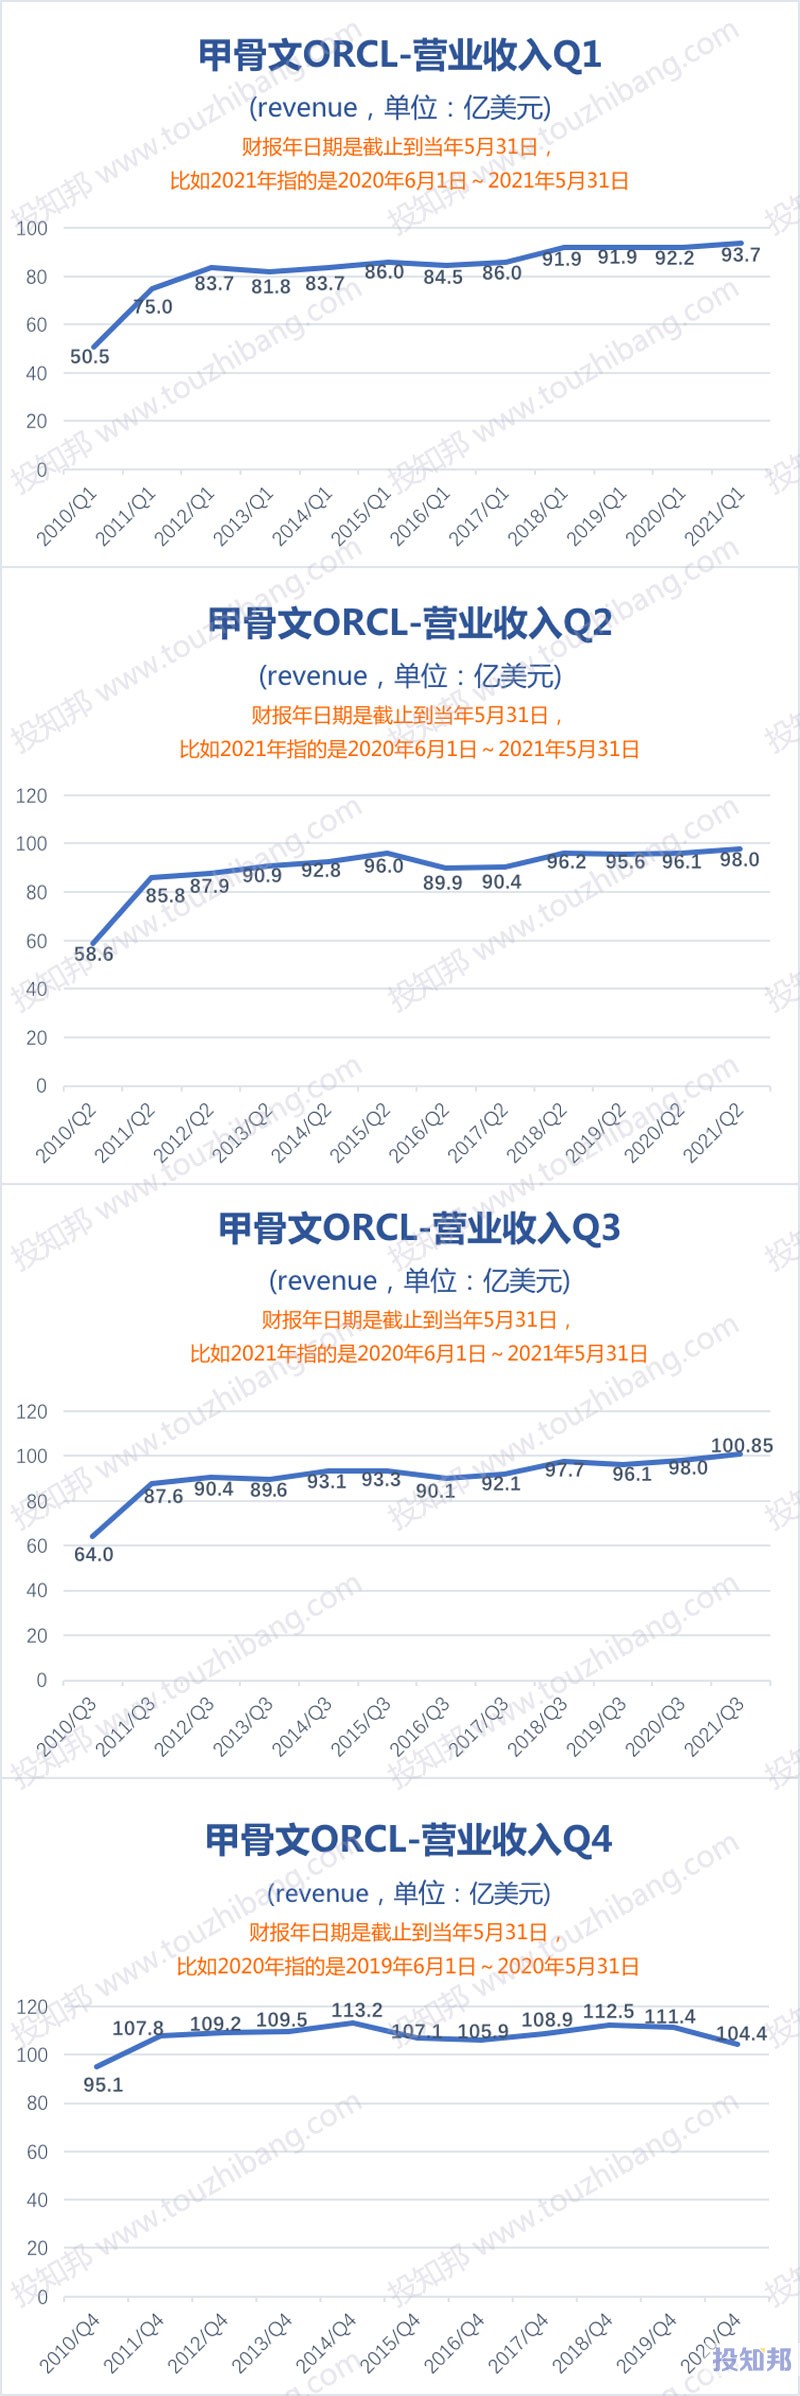 甲骨文(ORCL)核心财报数据图示(2010年～2021财报年Q3，更新)